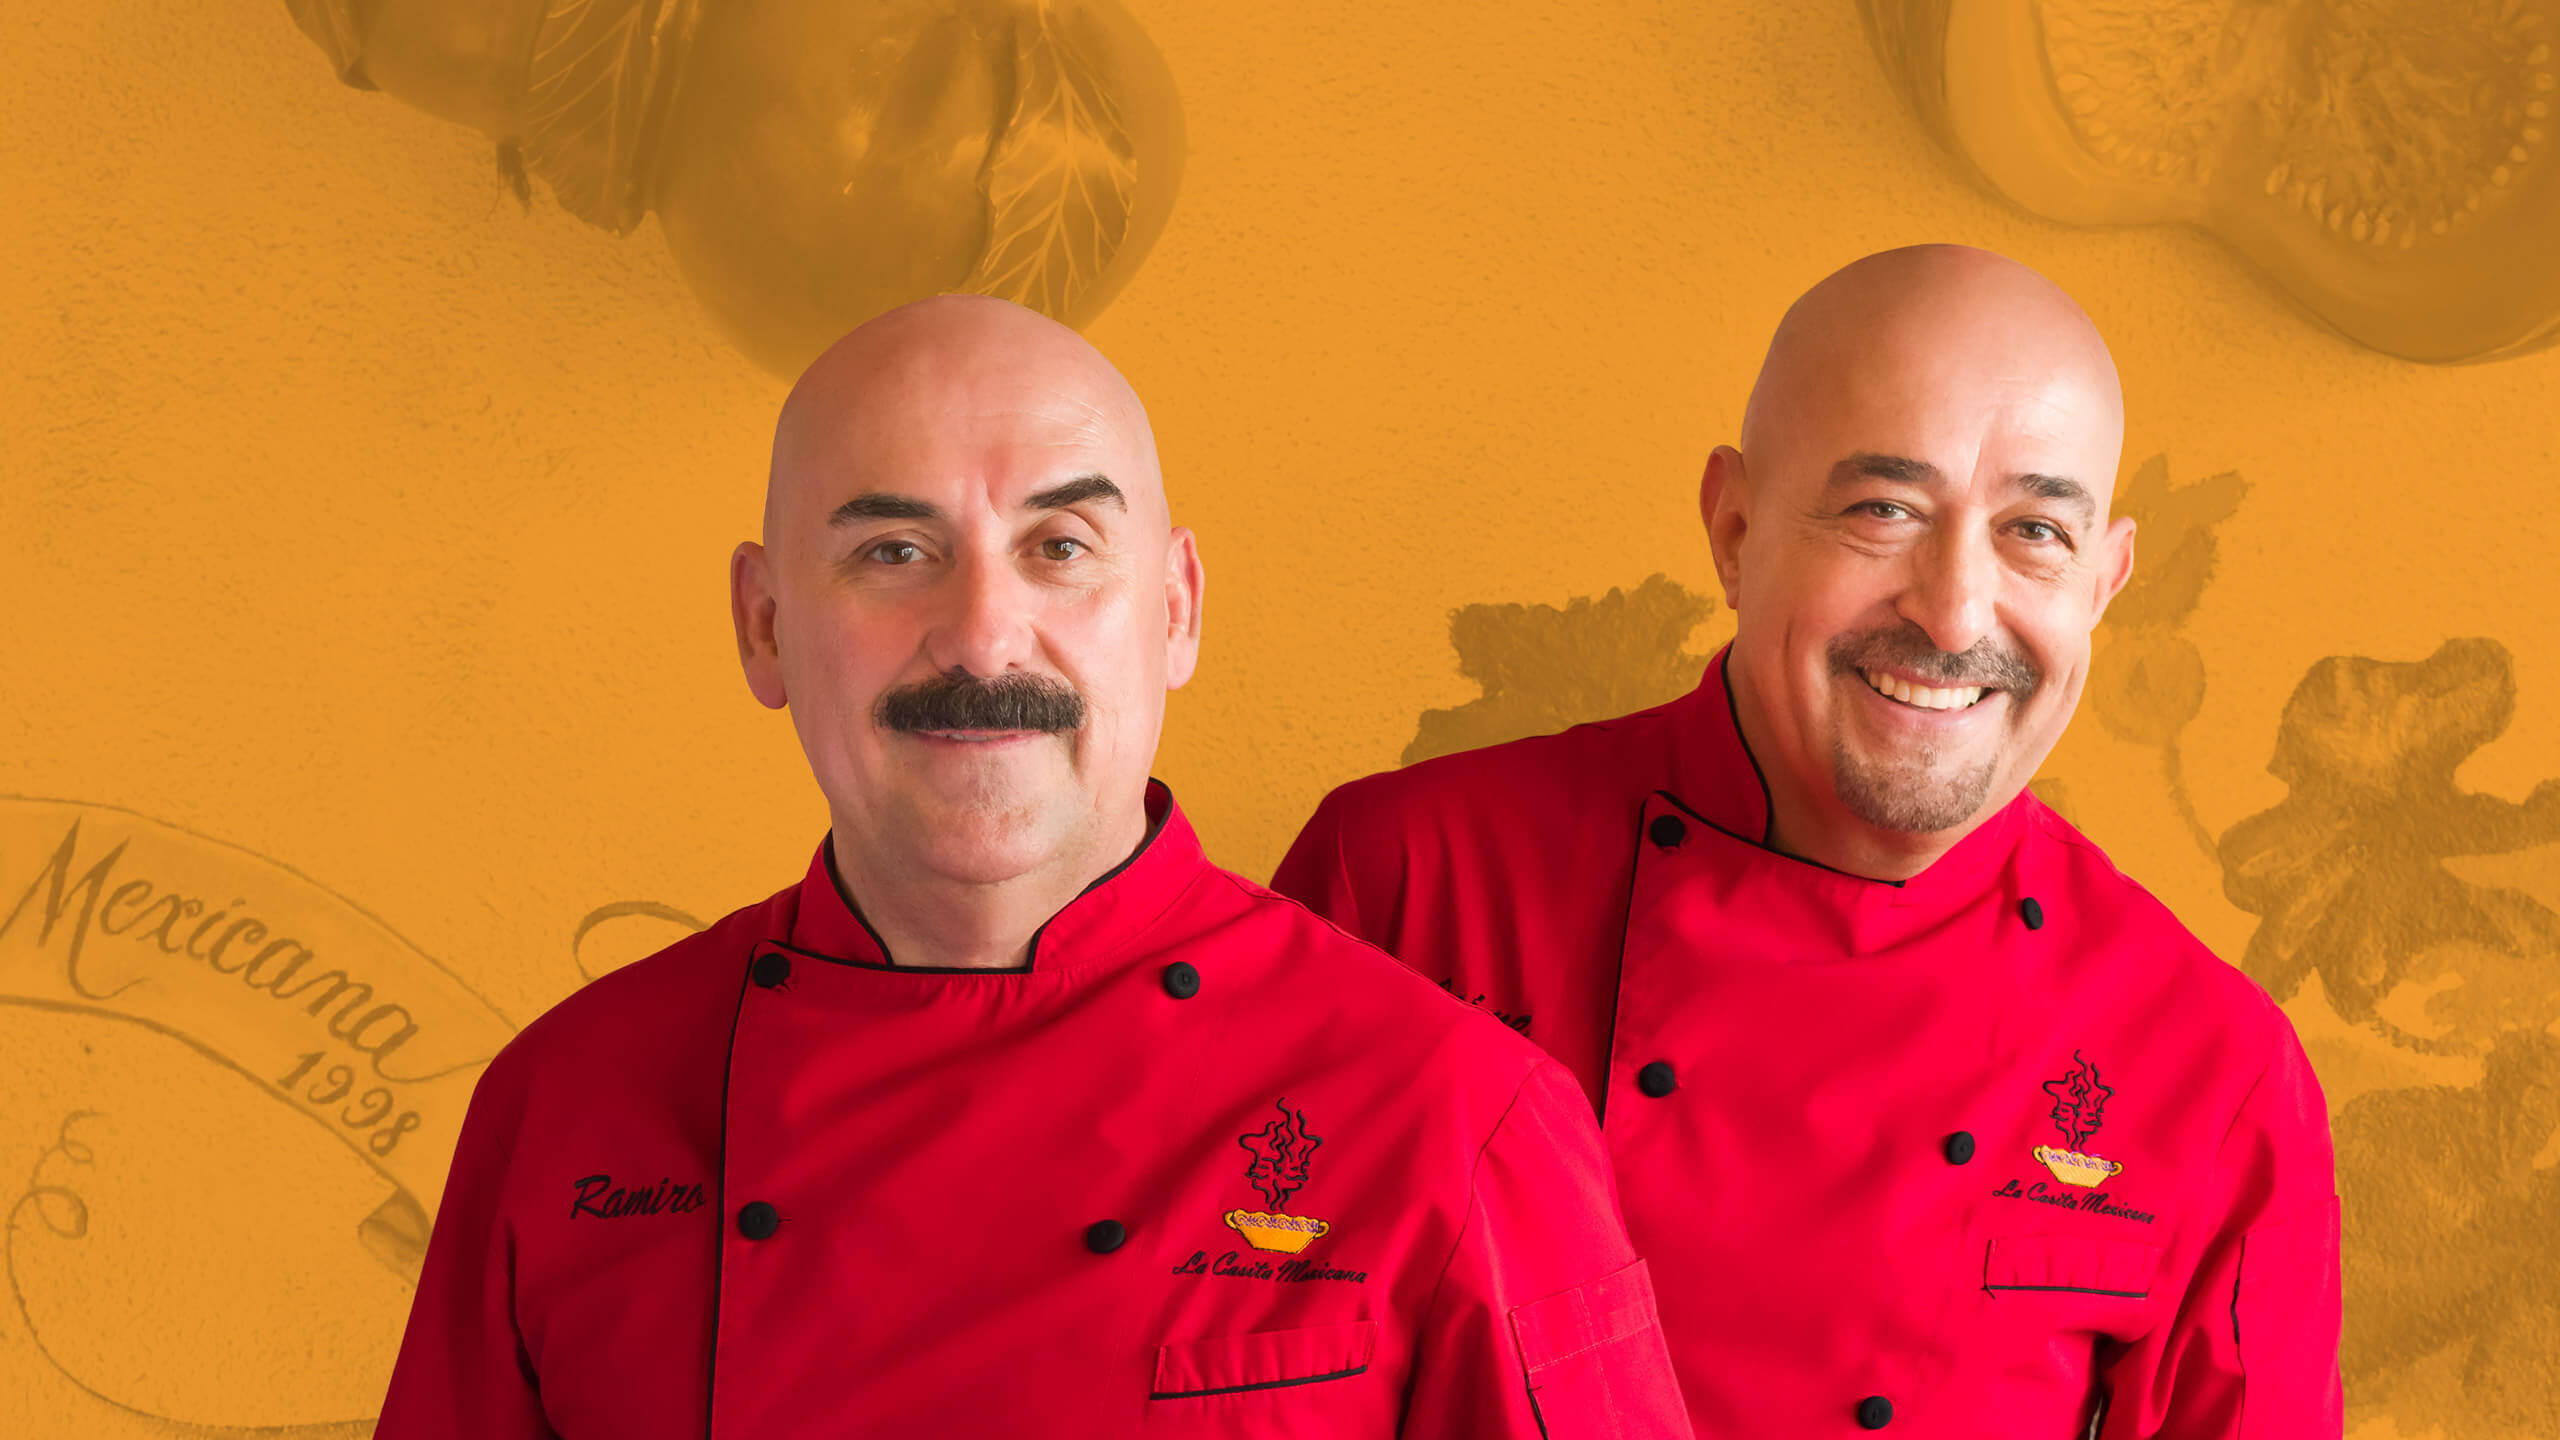 Chefs Jaime and Ramiro